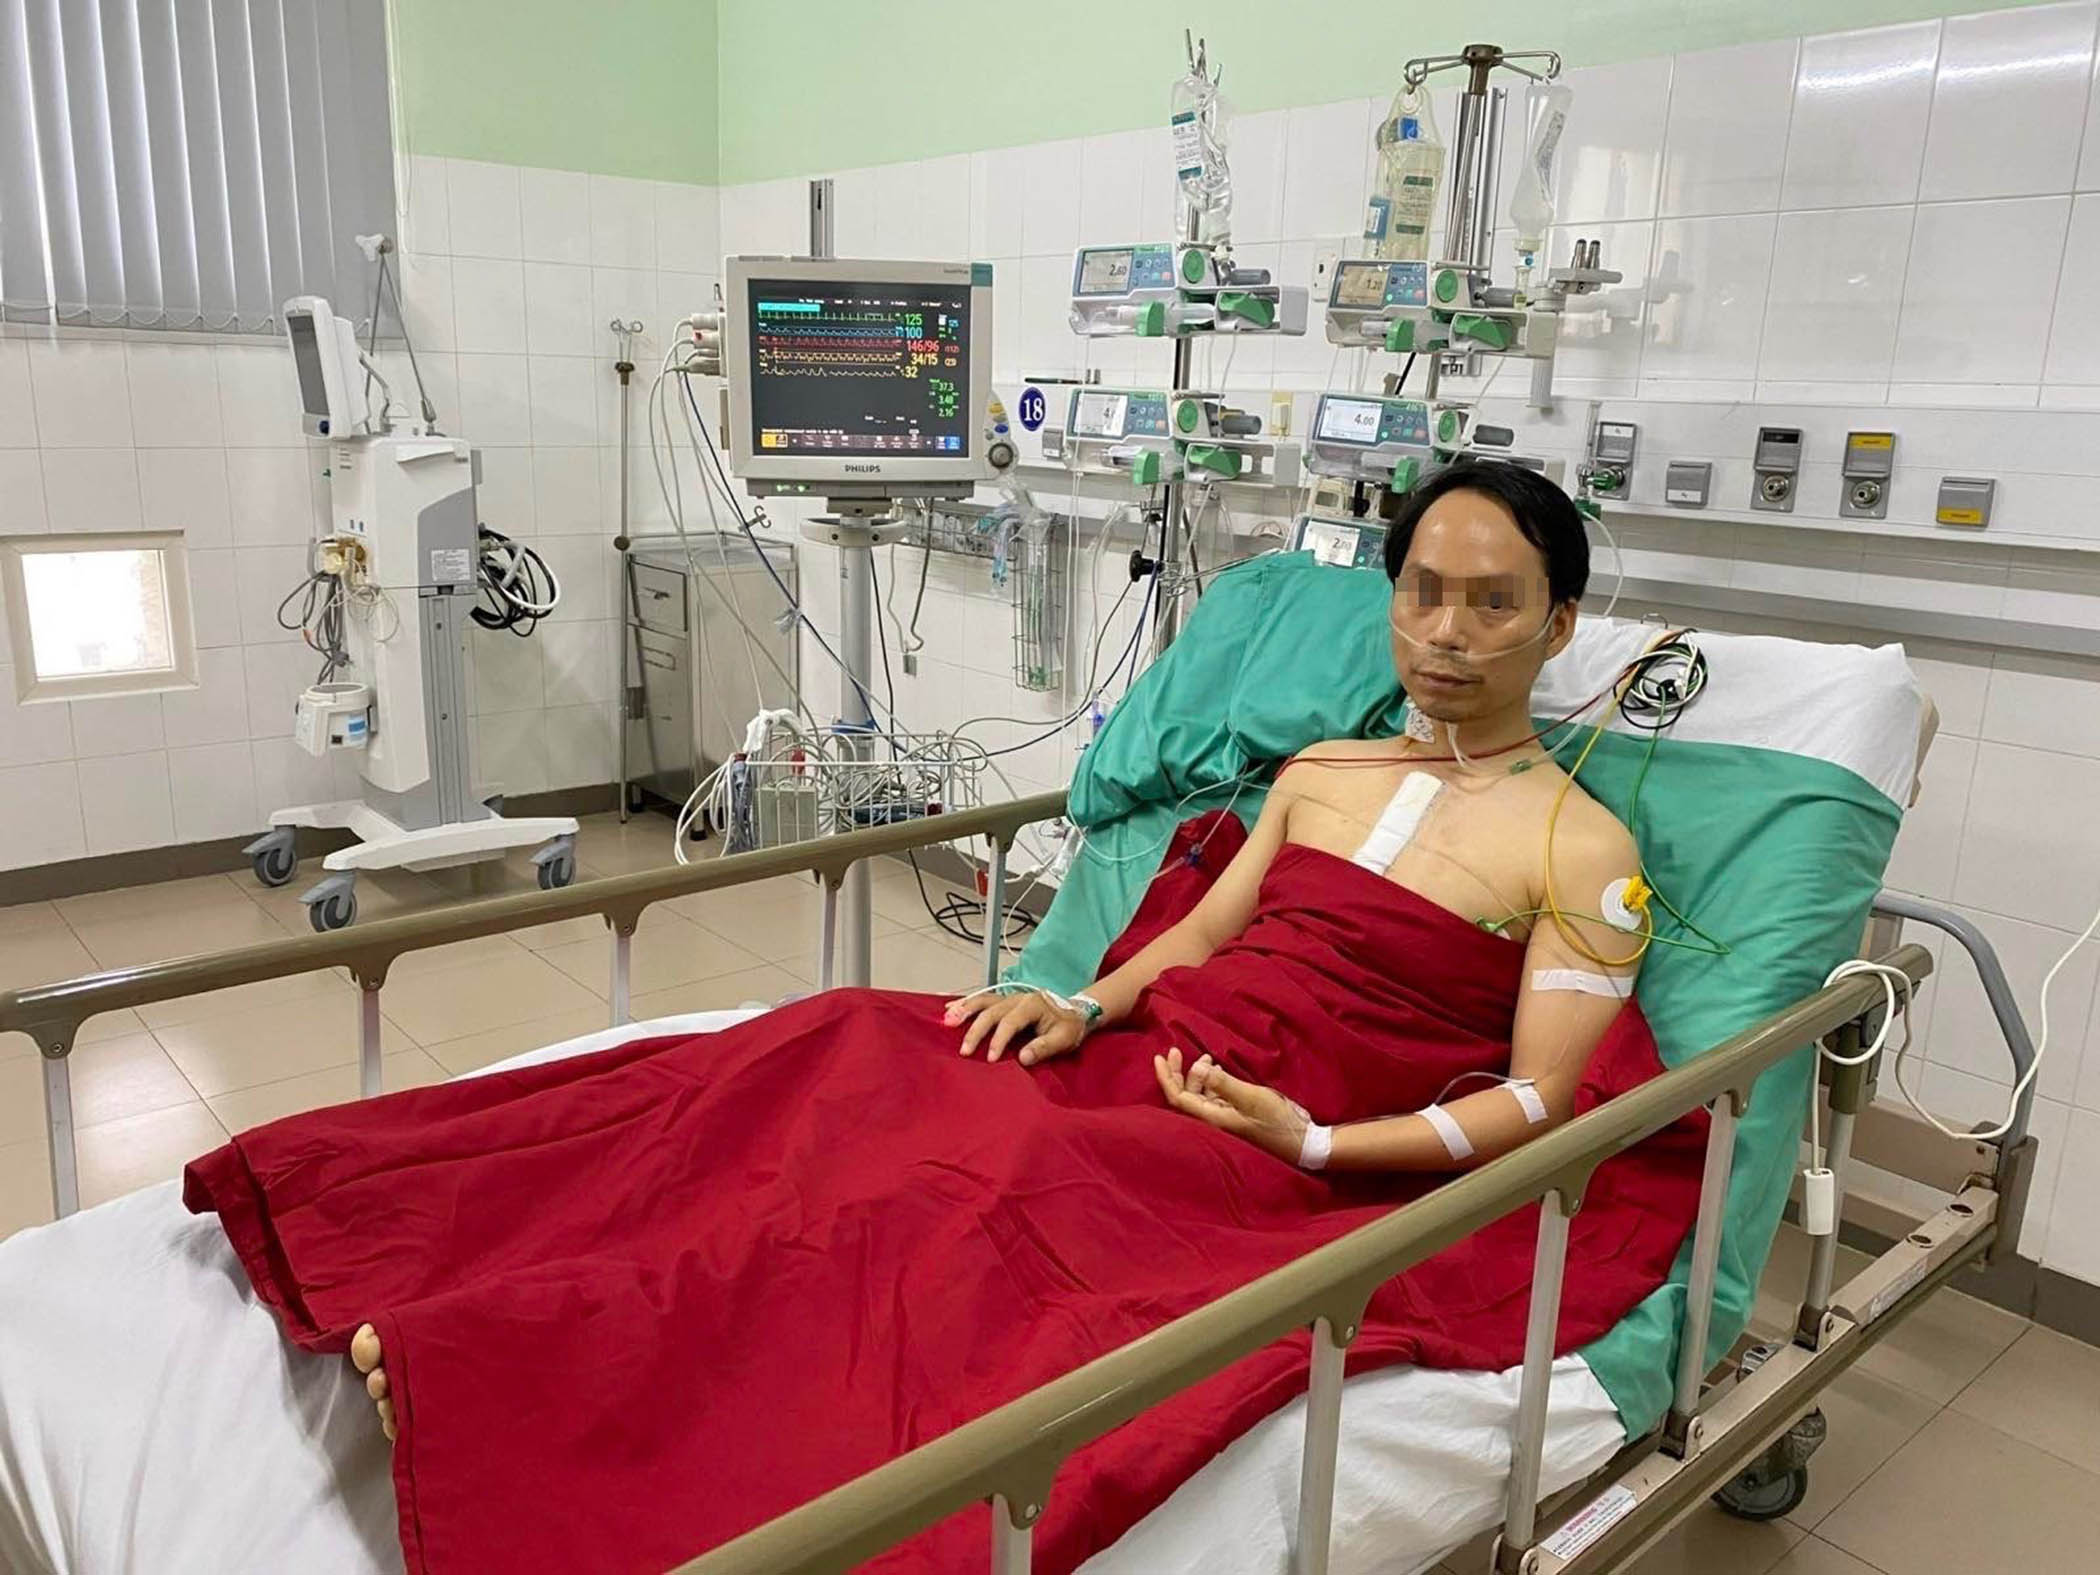 Bệnh nhân Trần Quang H. (34 tuổi, ở Thừa Thiên - Huế) được ghép tim từ ca hiến tạng vào sáng 5/12 đã dần hồi phục (ảnh Bệnh viện Trung ương Huế cung cấp).